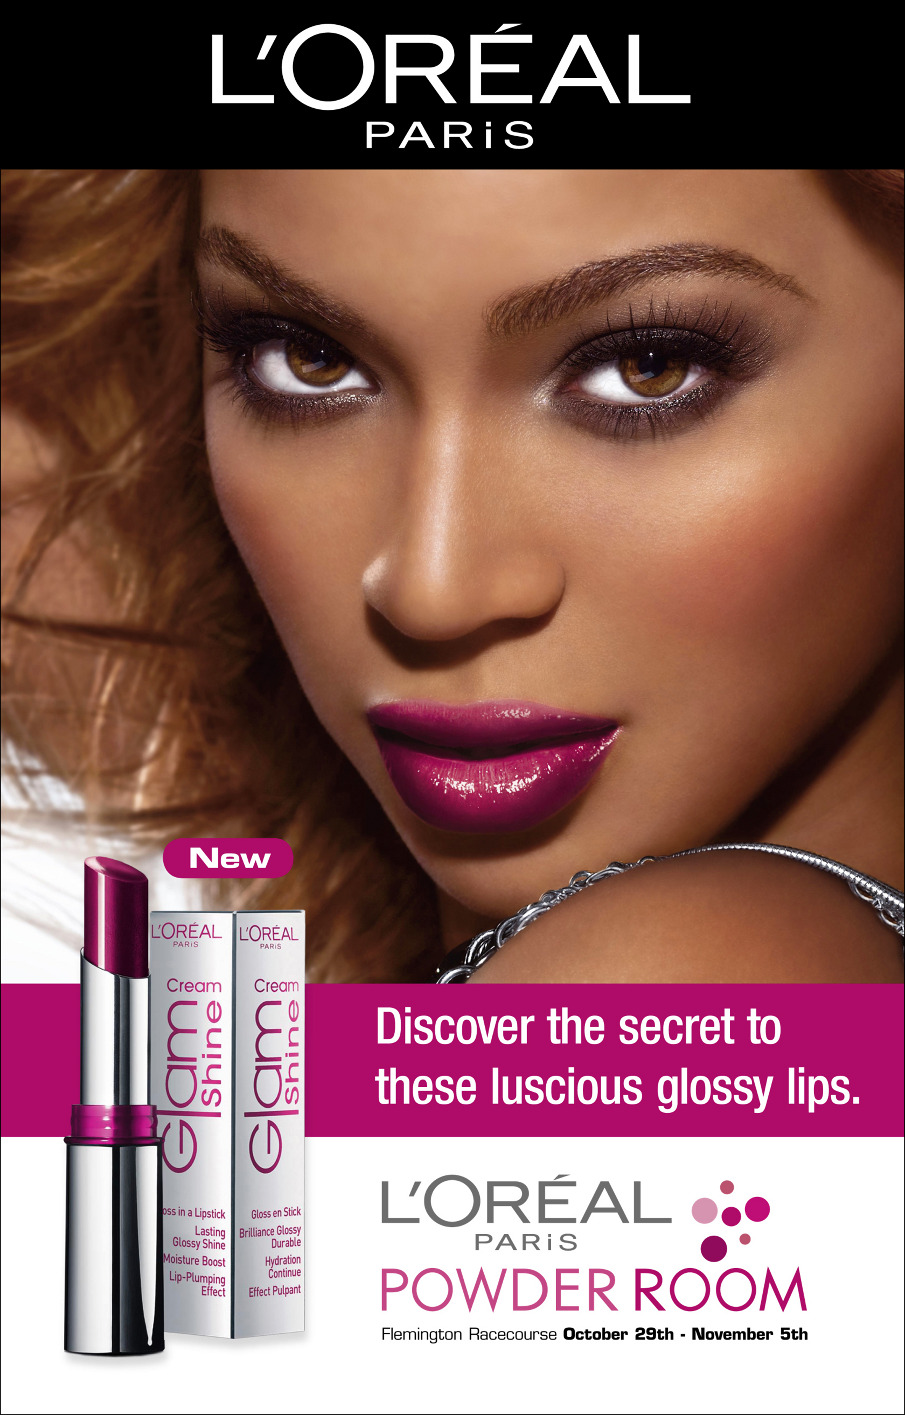 Музыка и видео из рекламы L'Oreal - Infallible Lip Color (Beyonce)